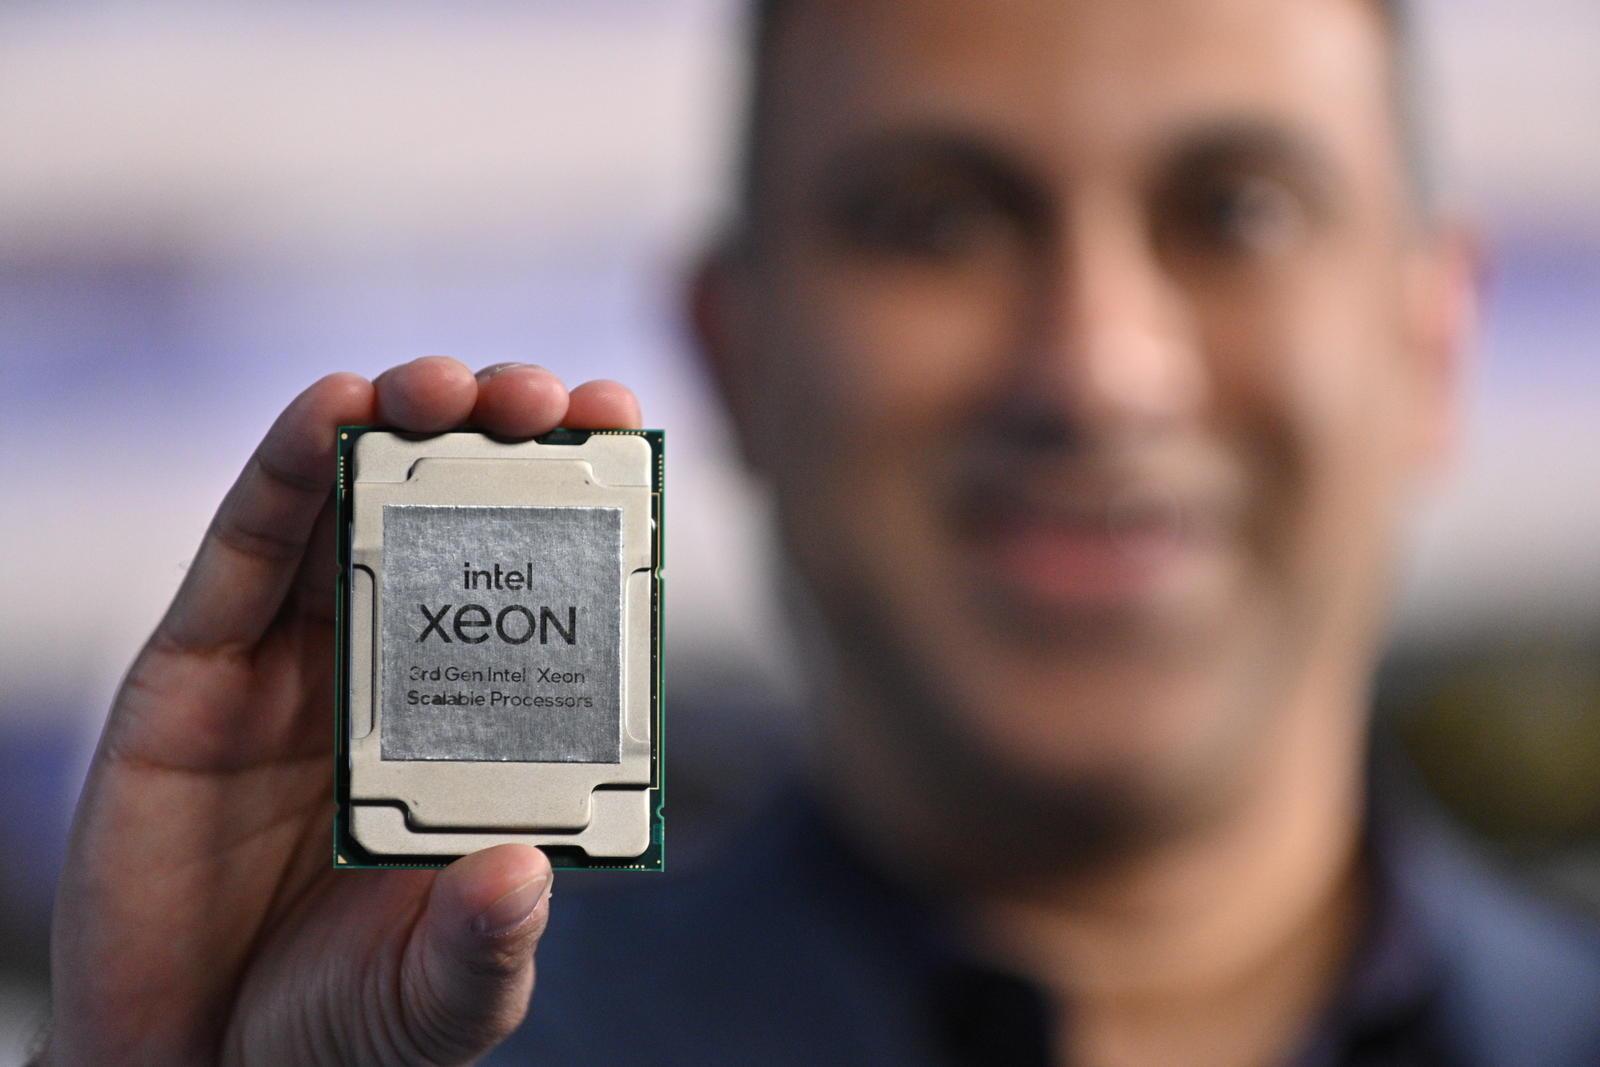 Intel ने तीसरी पीढ़ी का जियोन स्केलेबल प्रोसेसर लॉन्च किया